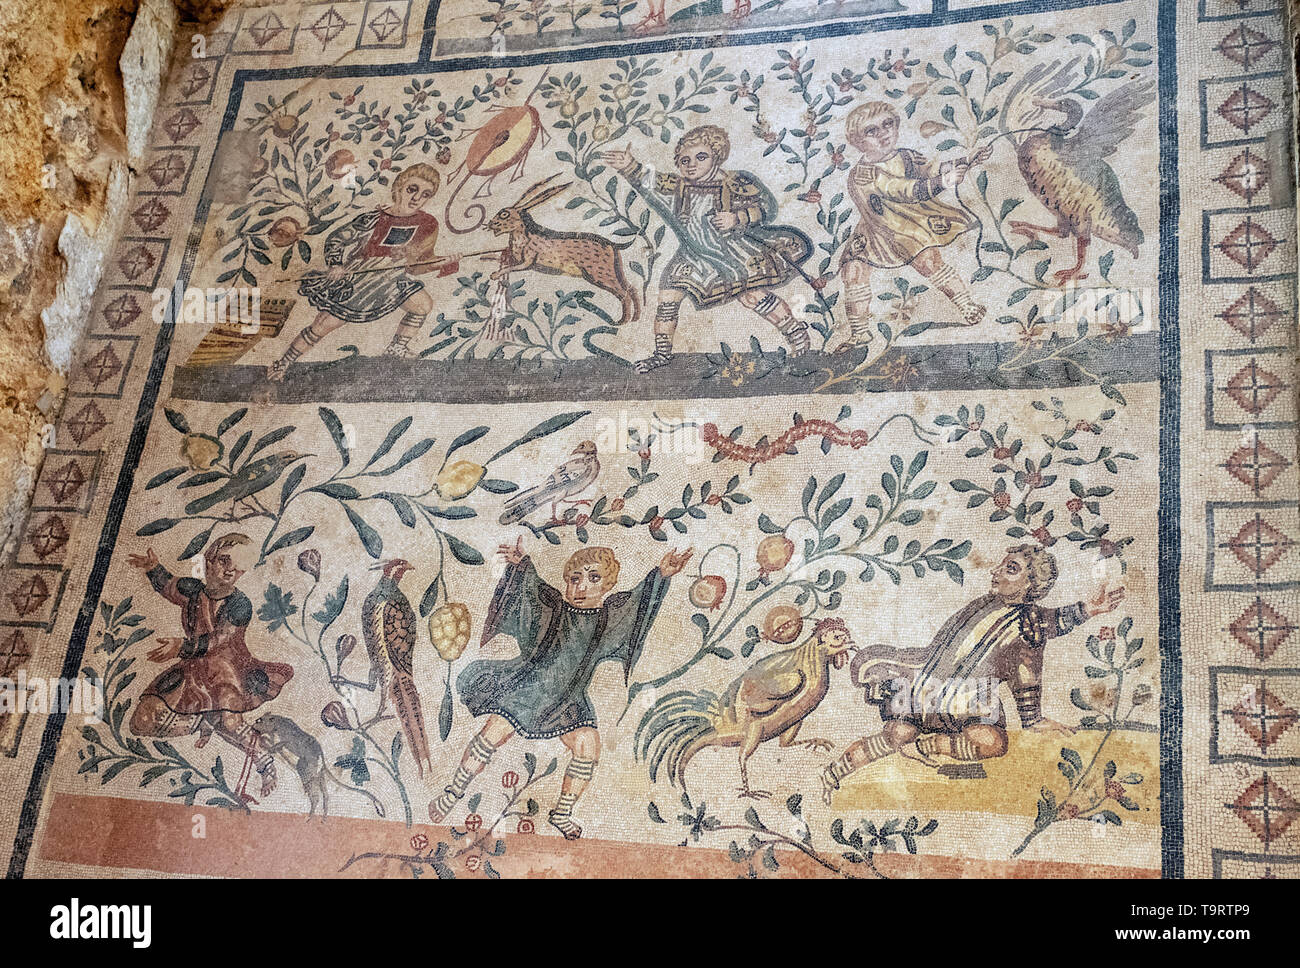 Fanciulli Cubicolo dei cacciatori Mosaik Jagdszenen Kinder töten Hase Villa Romana del Casale Erice Sizilien. Stockfoto